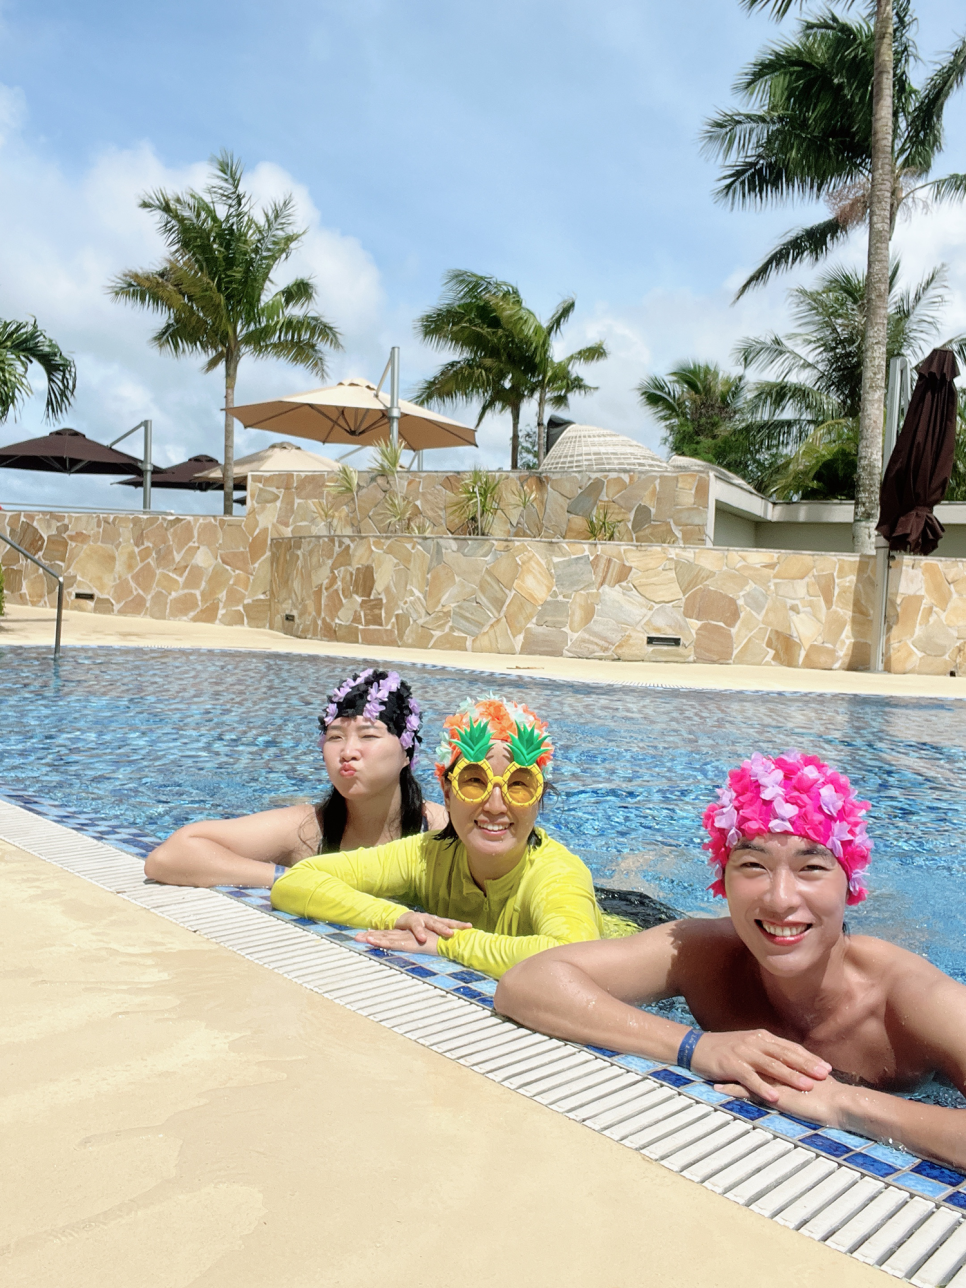 괌 츠바키타워 호텔 수영장, 조식, 라운지에서 즐긴 괌 여행 후기!